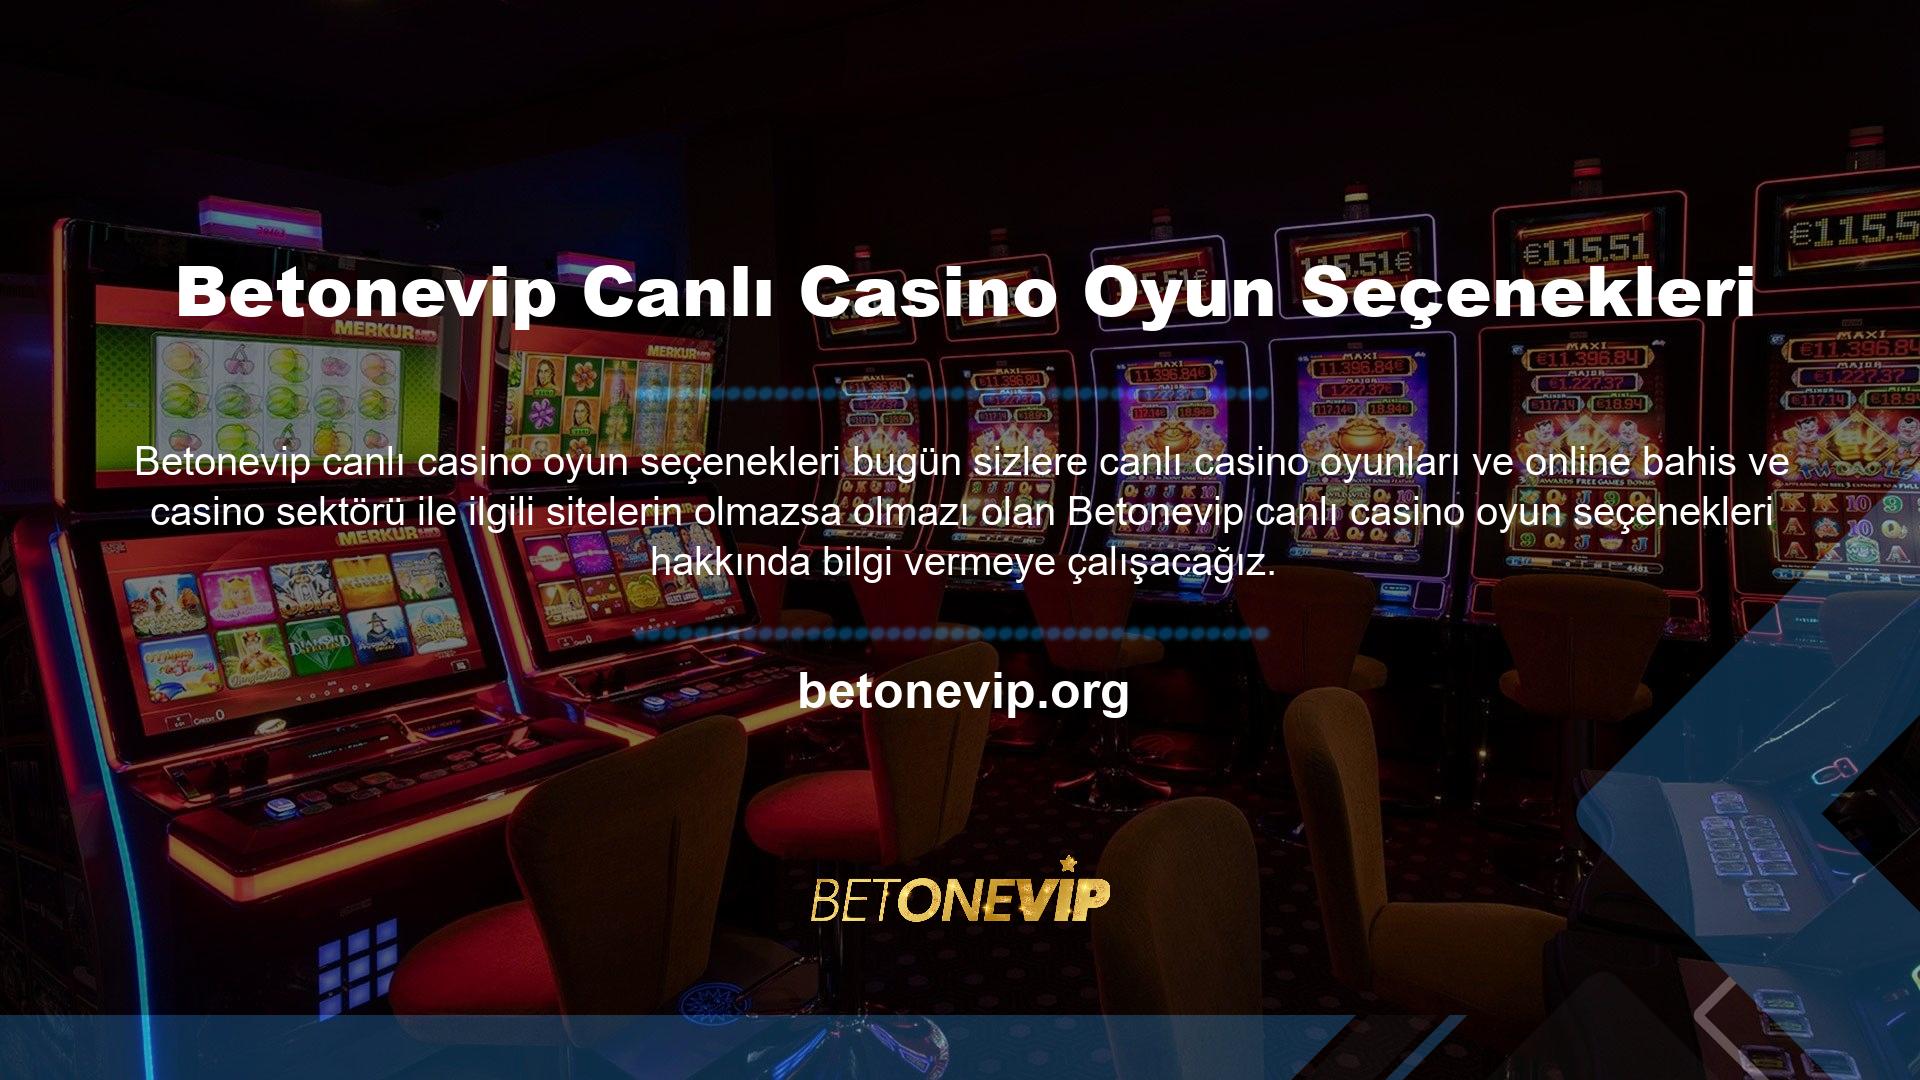 Betonevip, HD kalitesinden ödün vermeyen yayınları, farklı limitlerde oyunların oynanabildiği masaları ve geniş oyun yelpazesi ile otantik bir casino ortamını ayağınıza getiriyor